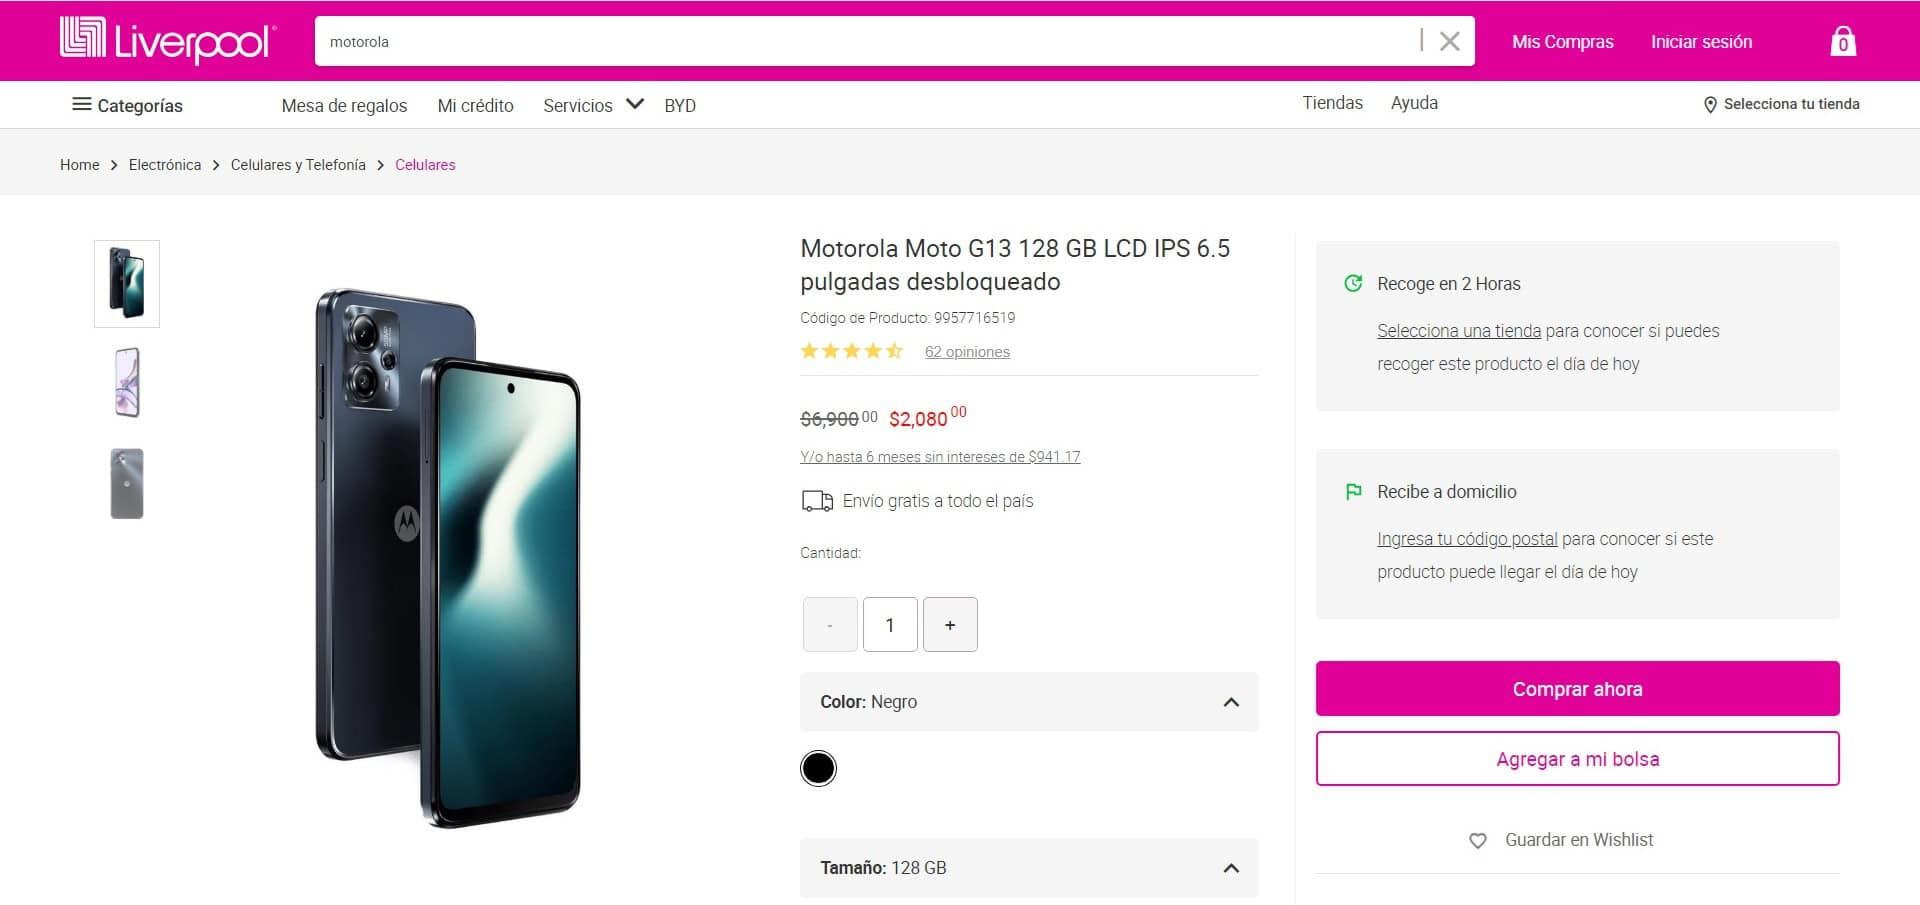 El Motorola Moto G13 y su precio de rebaja. Foto: Captura de pantalla